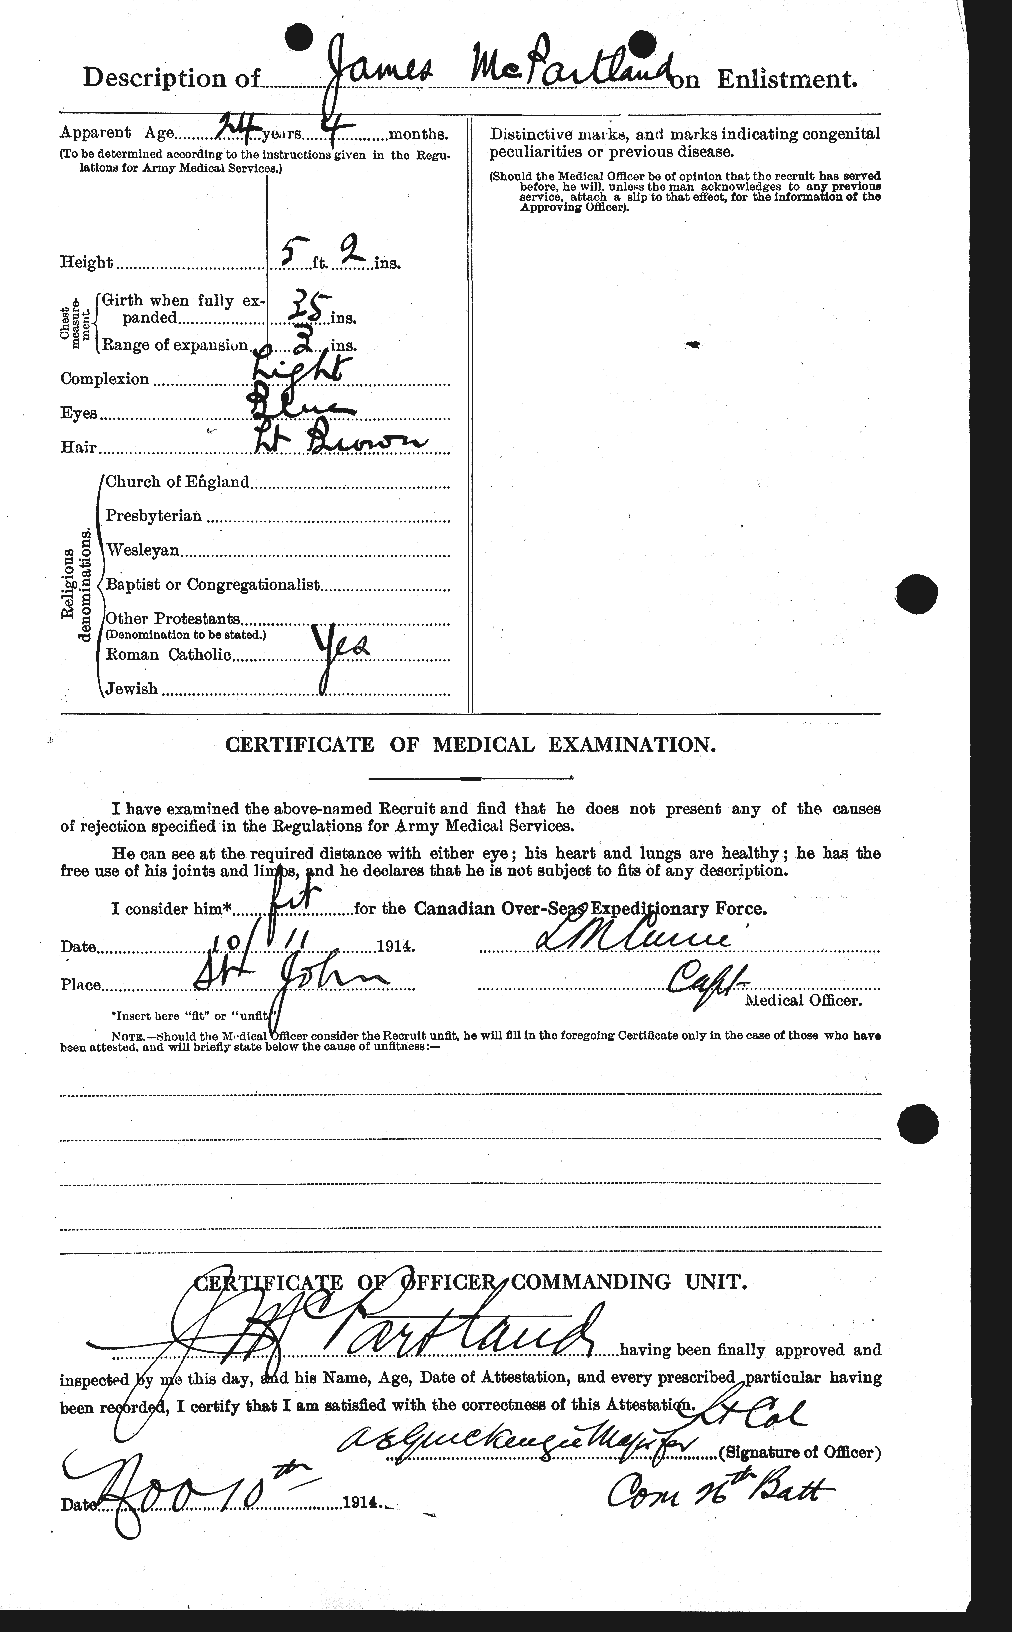 Dossiers du Personnel de la Première Guerre mondiale - CEC 539599b